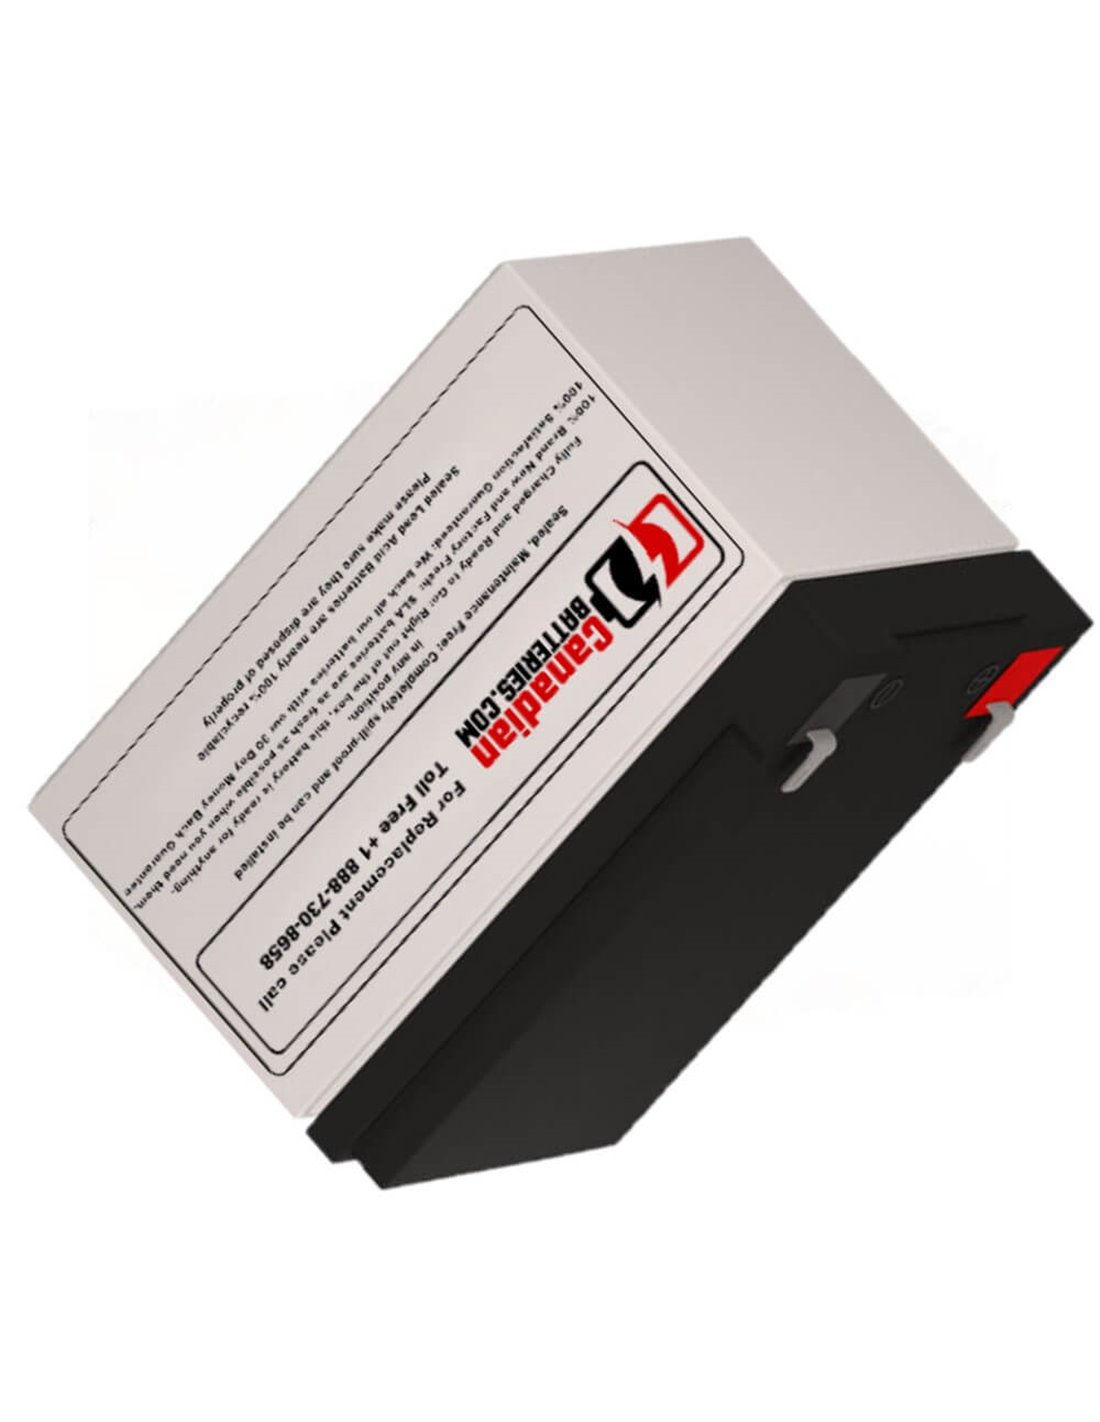 Battery for Deltec Prm700 UPS, 1 x 12V, 12Ah - 144Wh